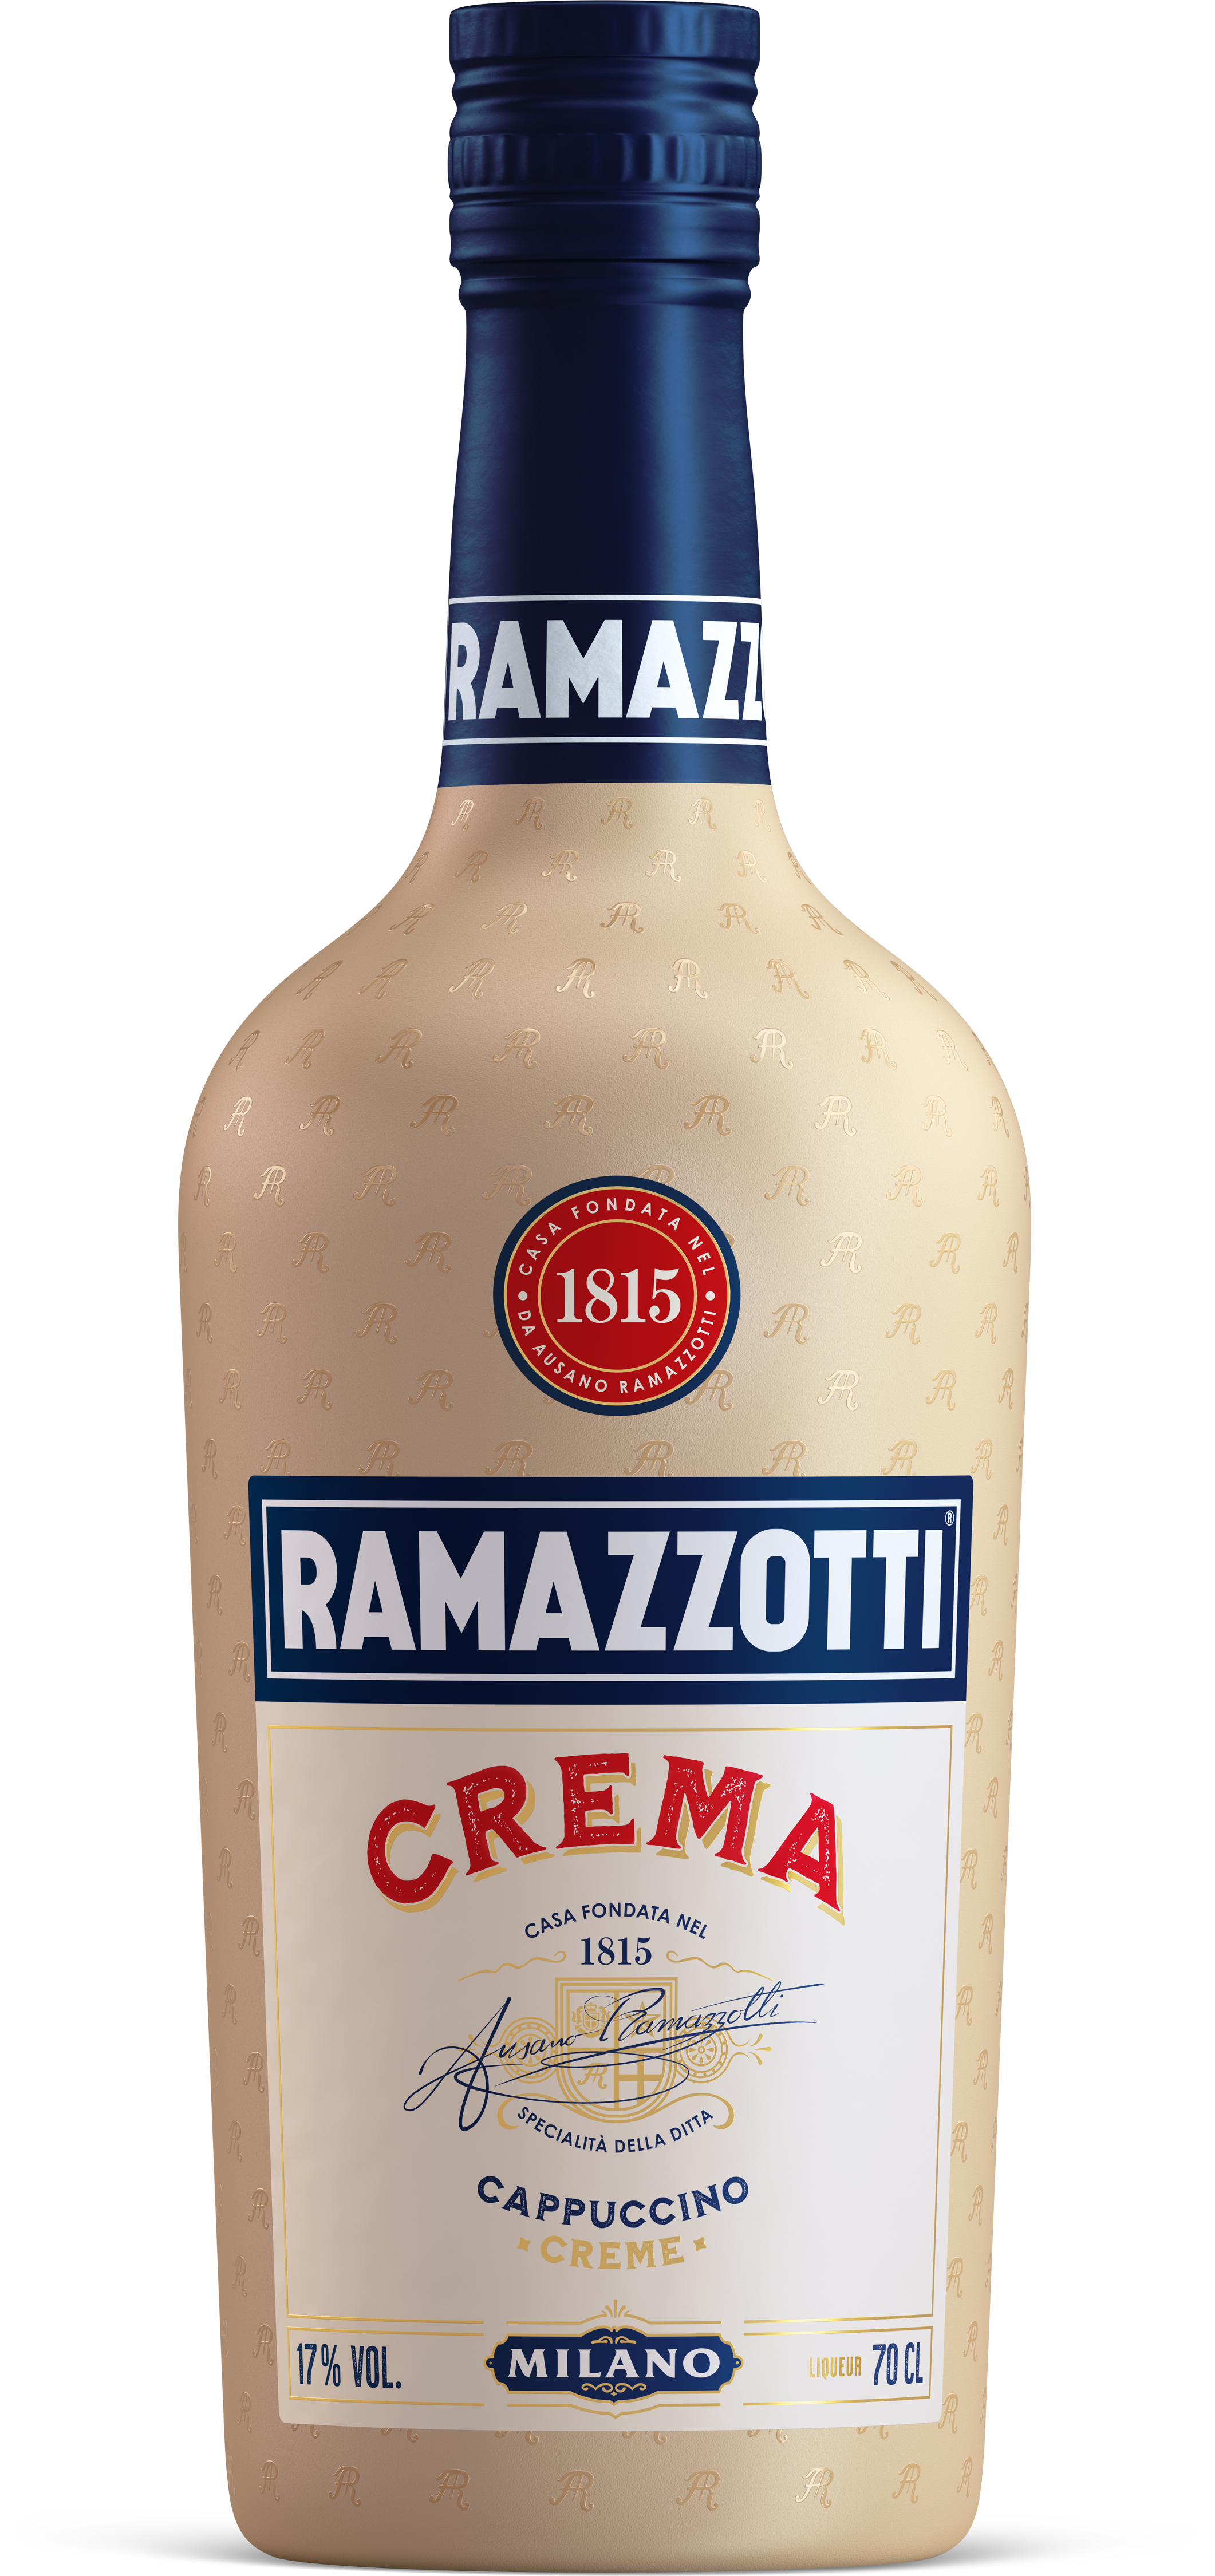 Ramazzotti Crema Cappuccino Creme 0,70 l